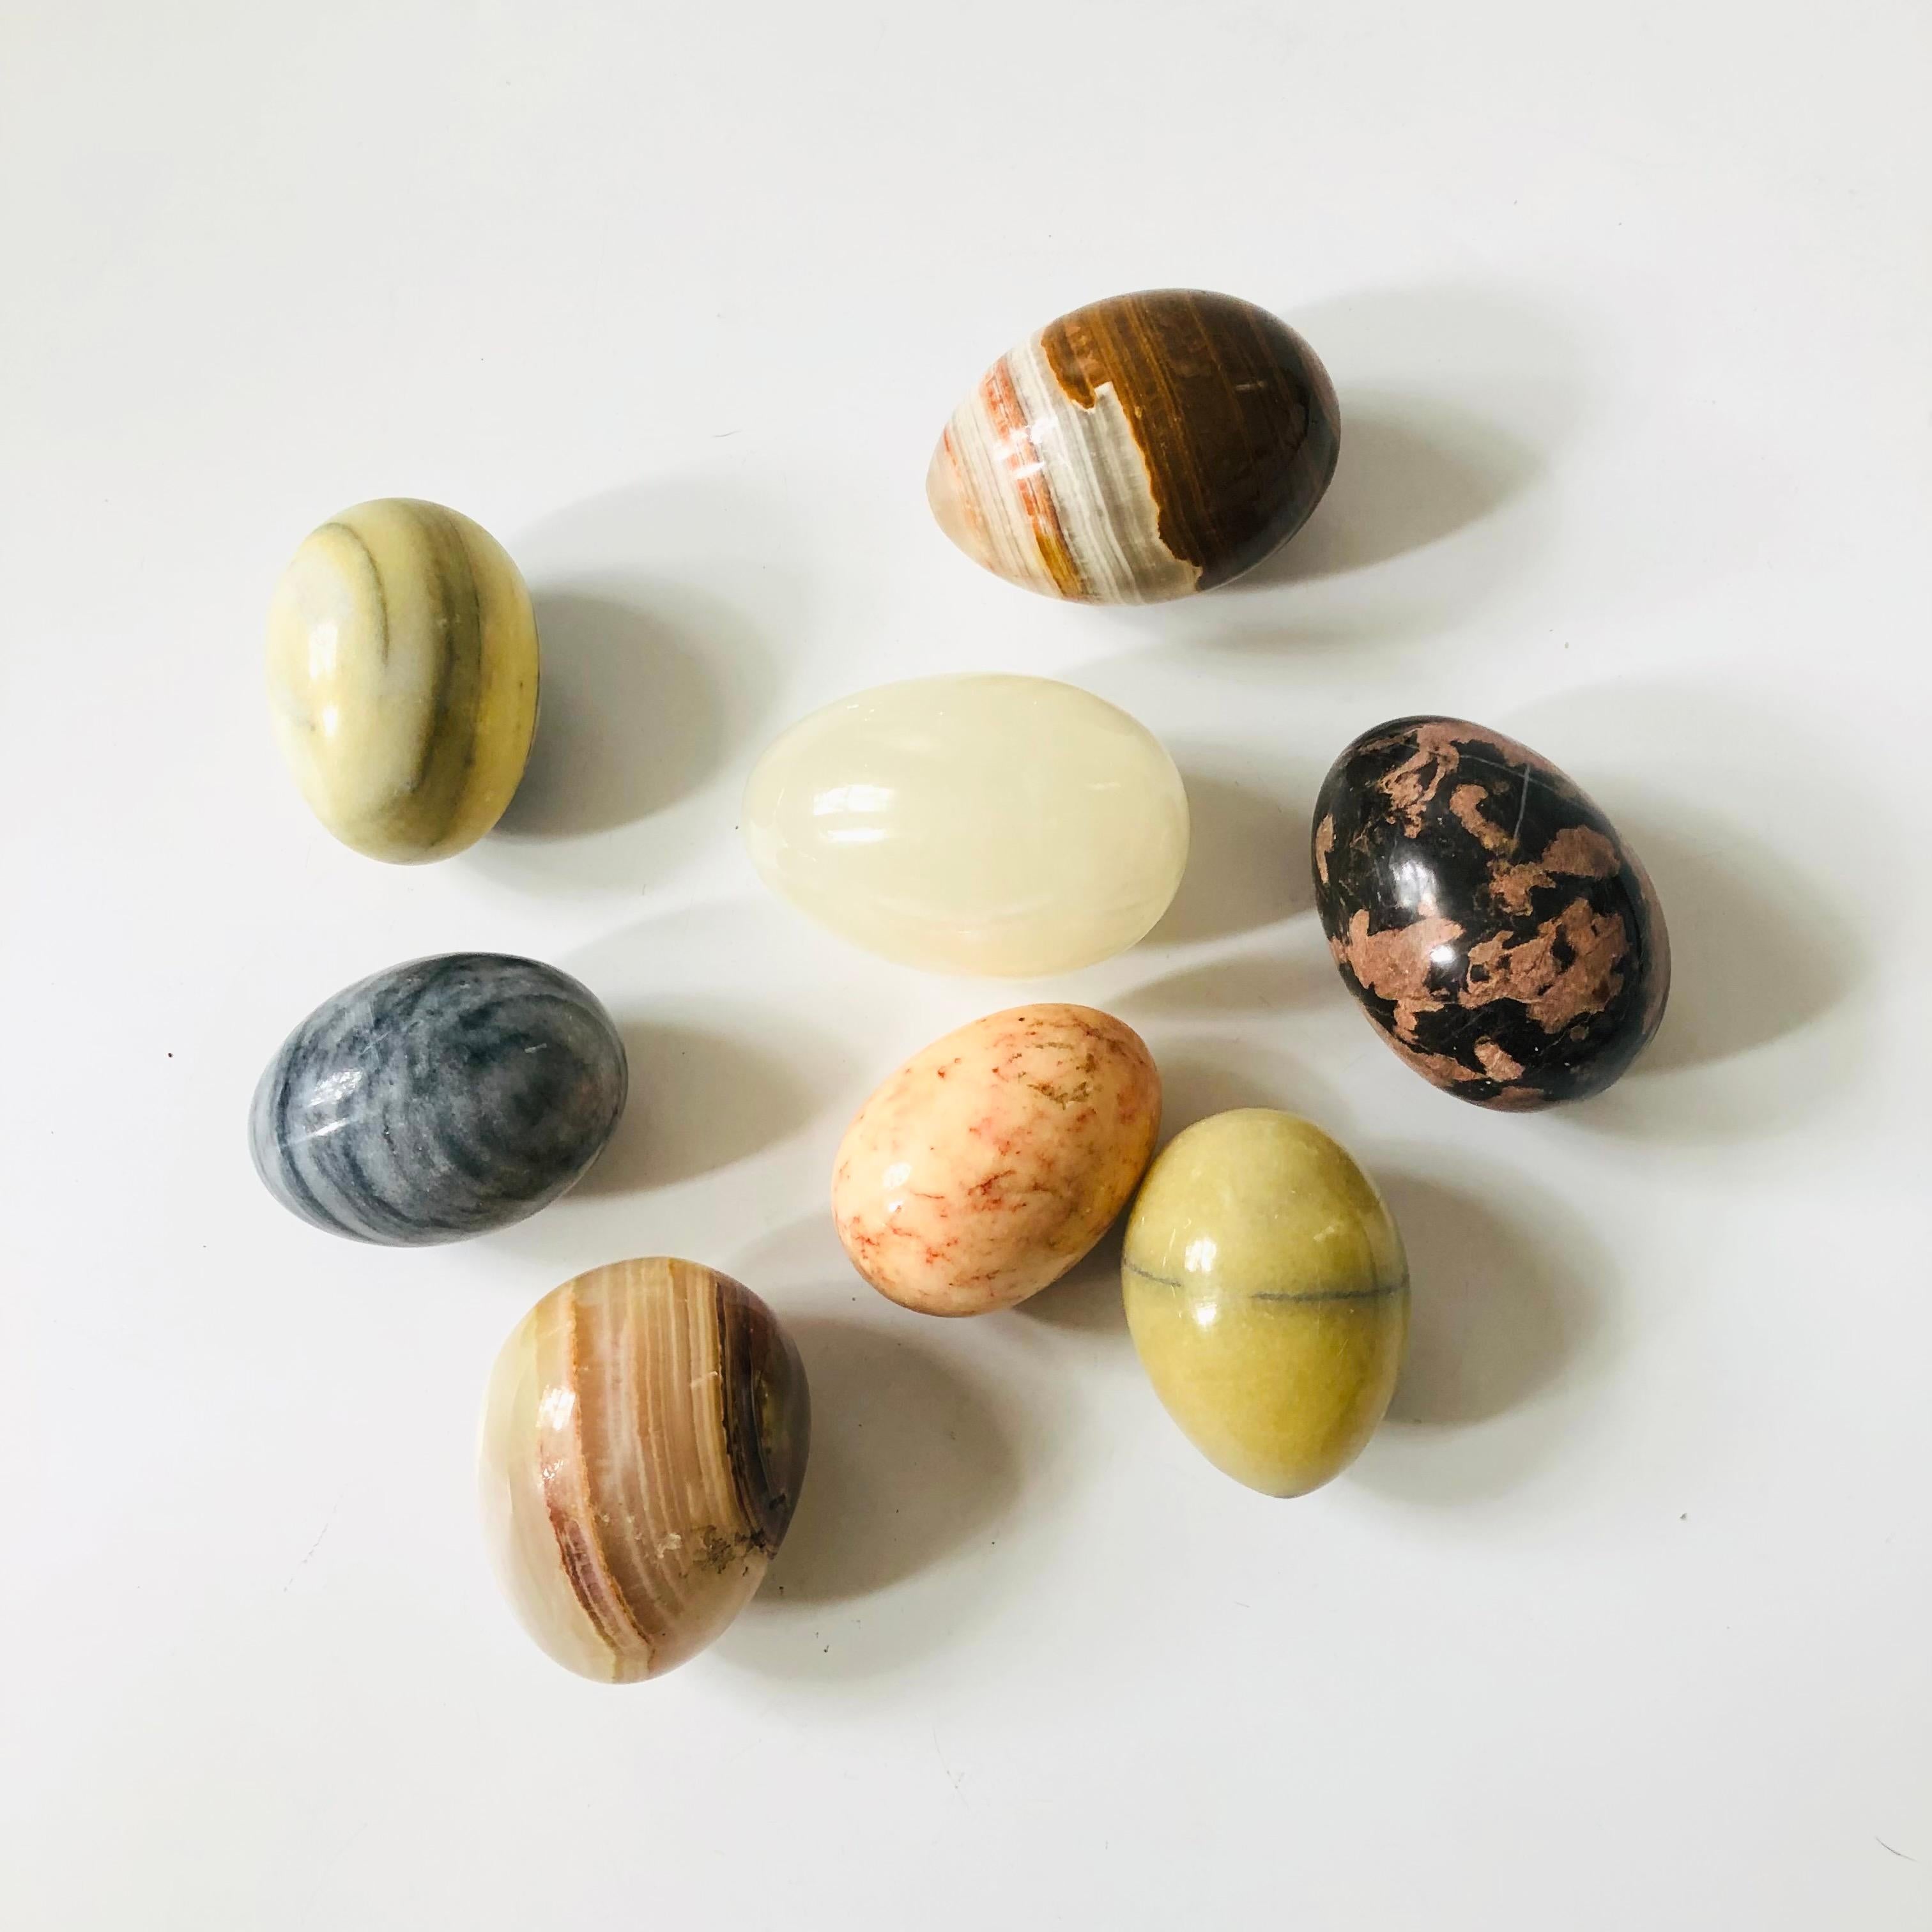 Ein Satz von 8 dekorativen Alabaster-Eiern. Schöne Farbvielfalt und natürliche Maserung des Steins.
Jeder misst ungefähr 2,5